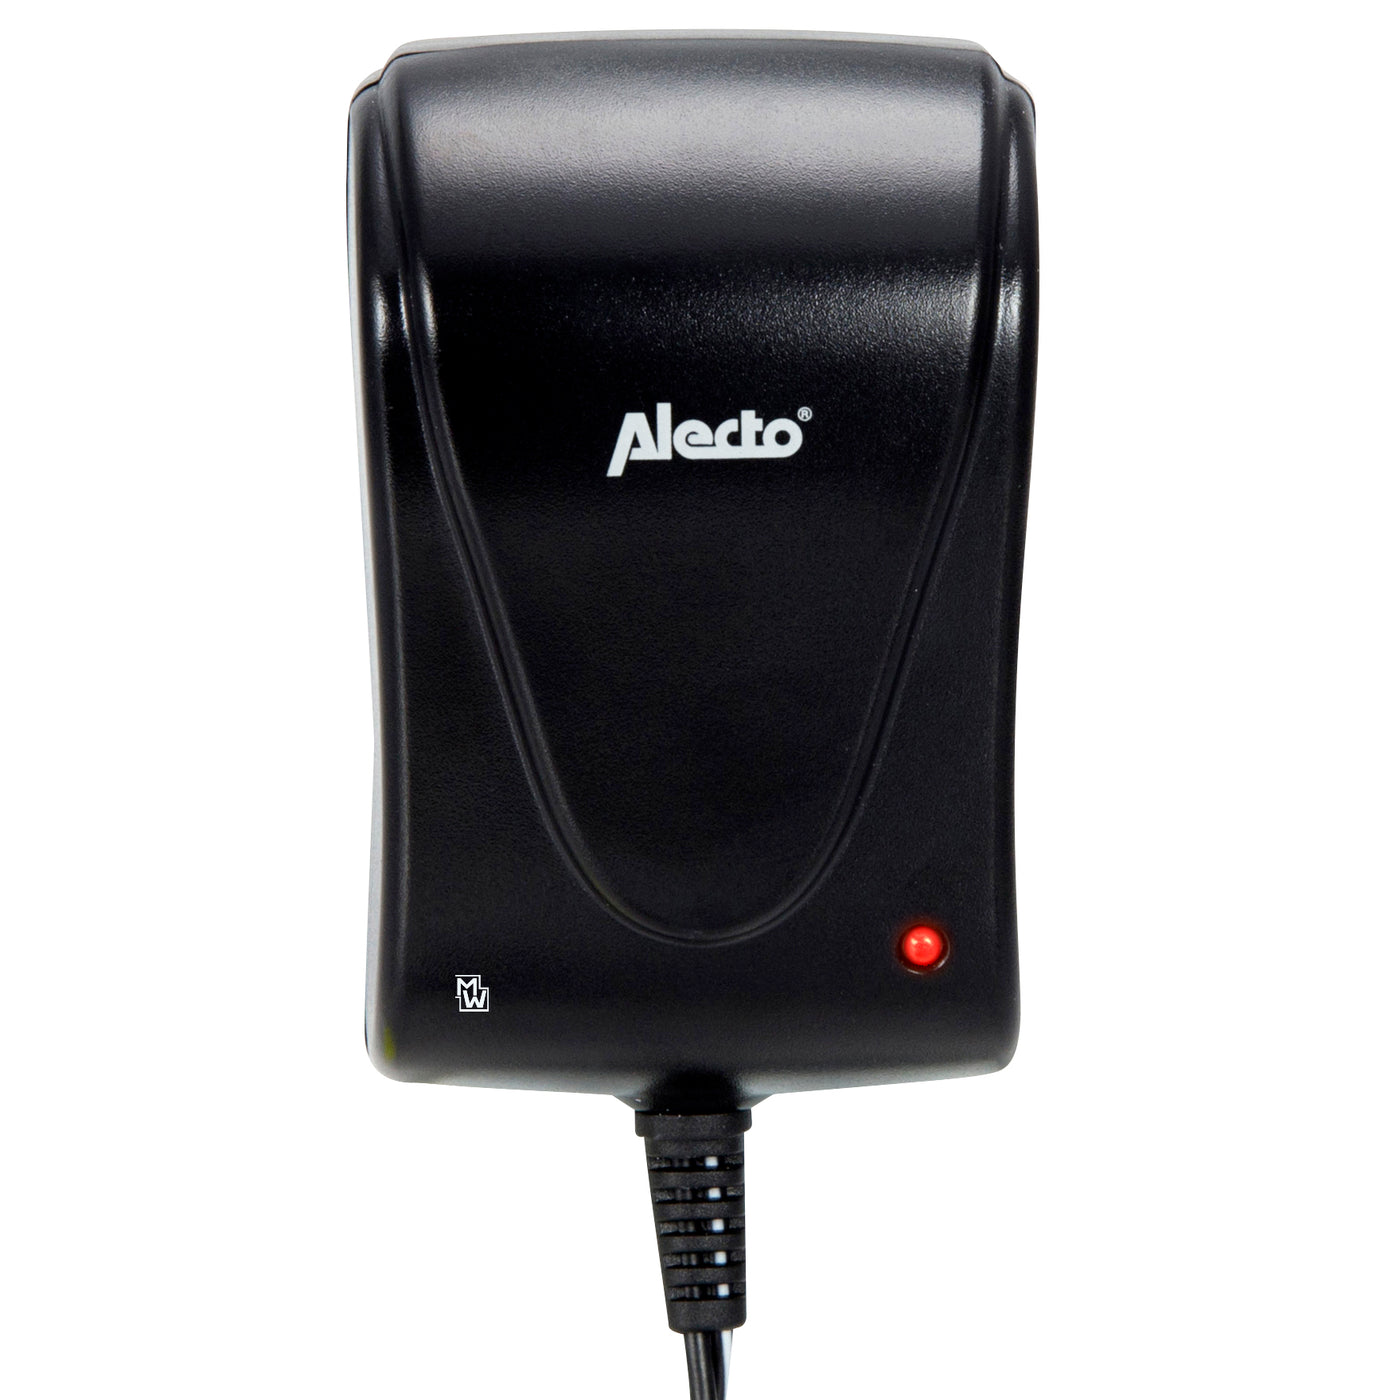 Alecto EUP-1500 - Adaptateur universel eco 1500 mA, noir